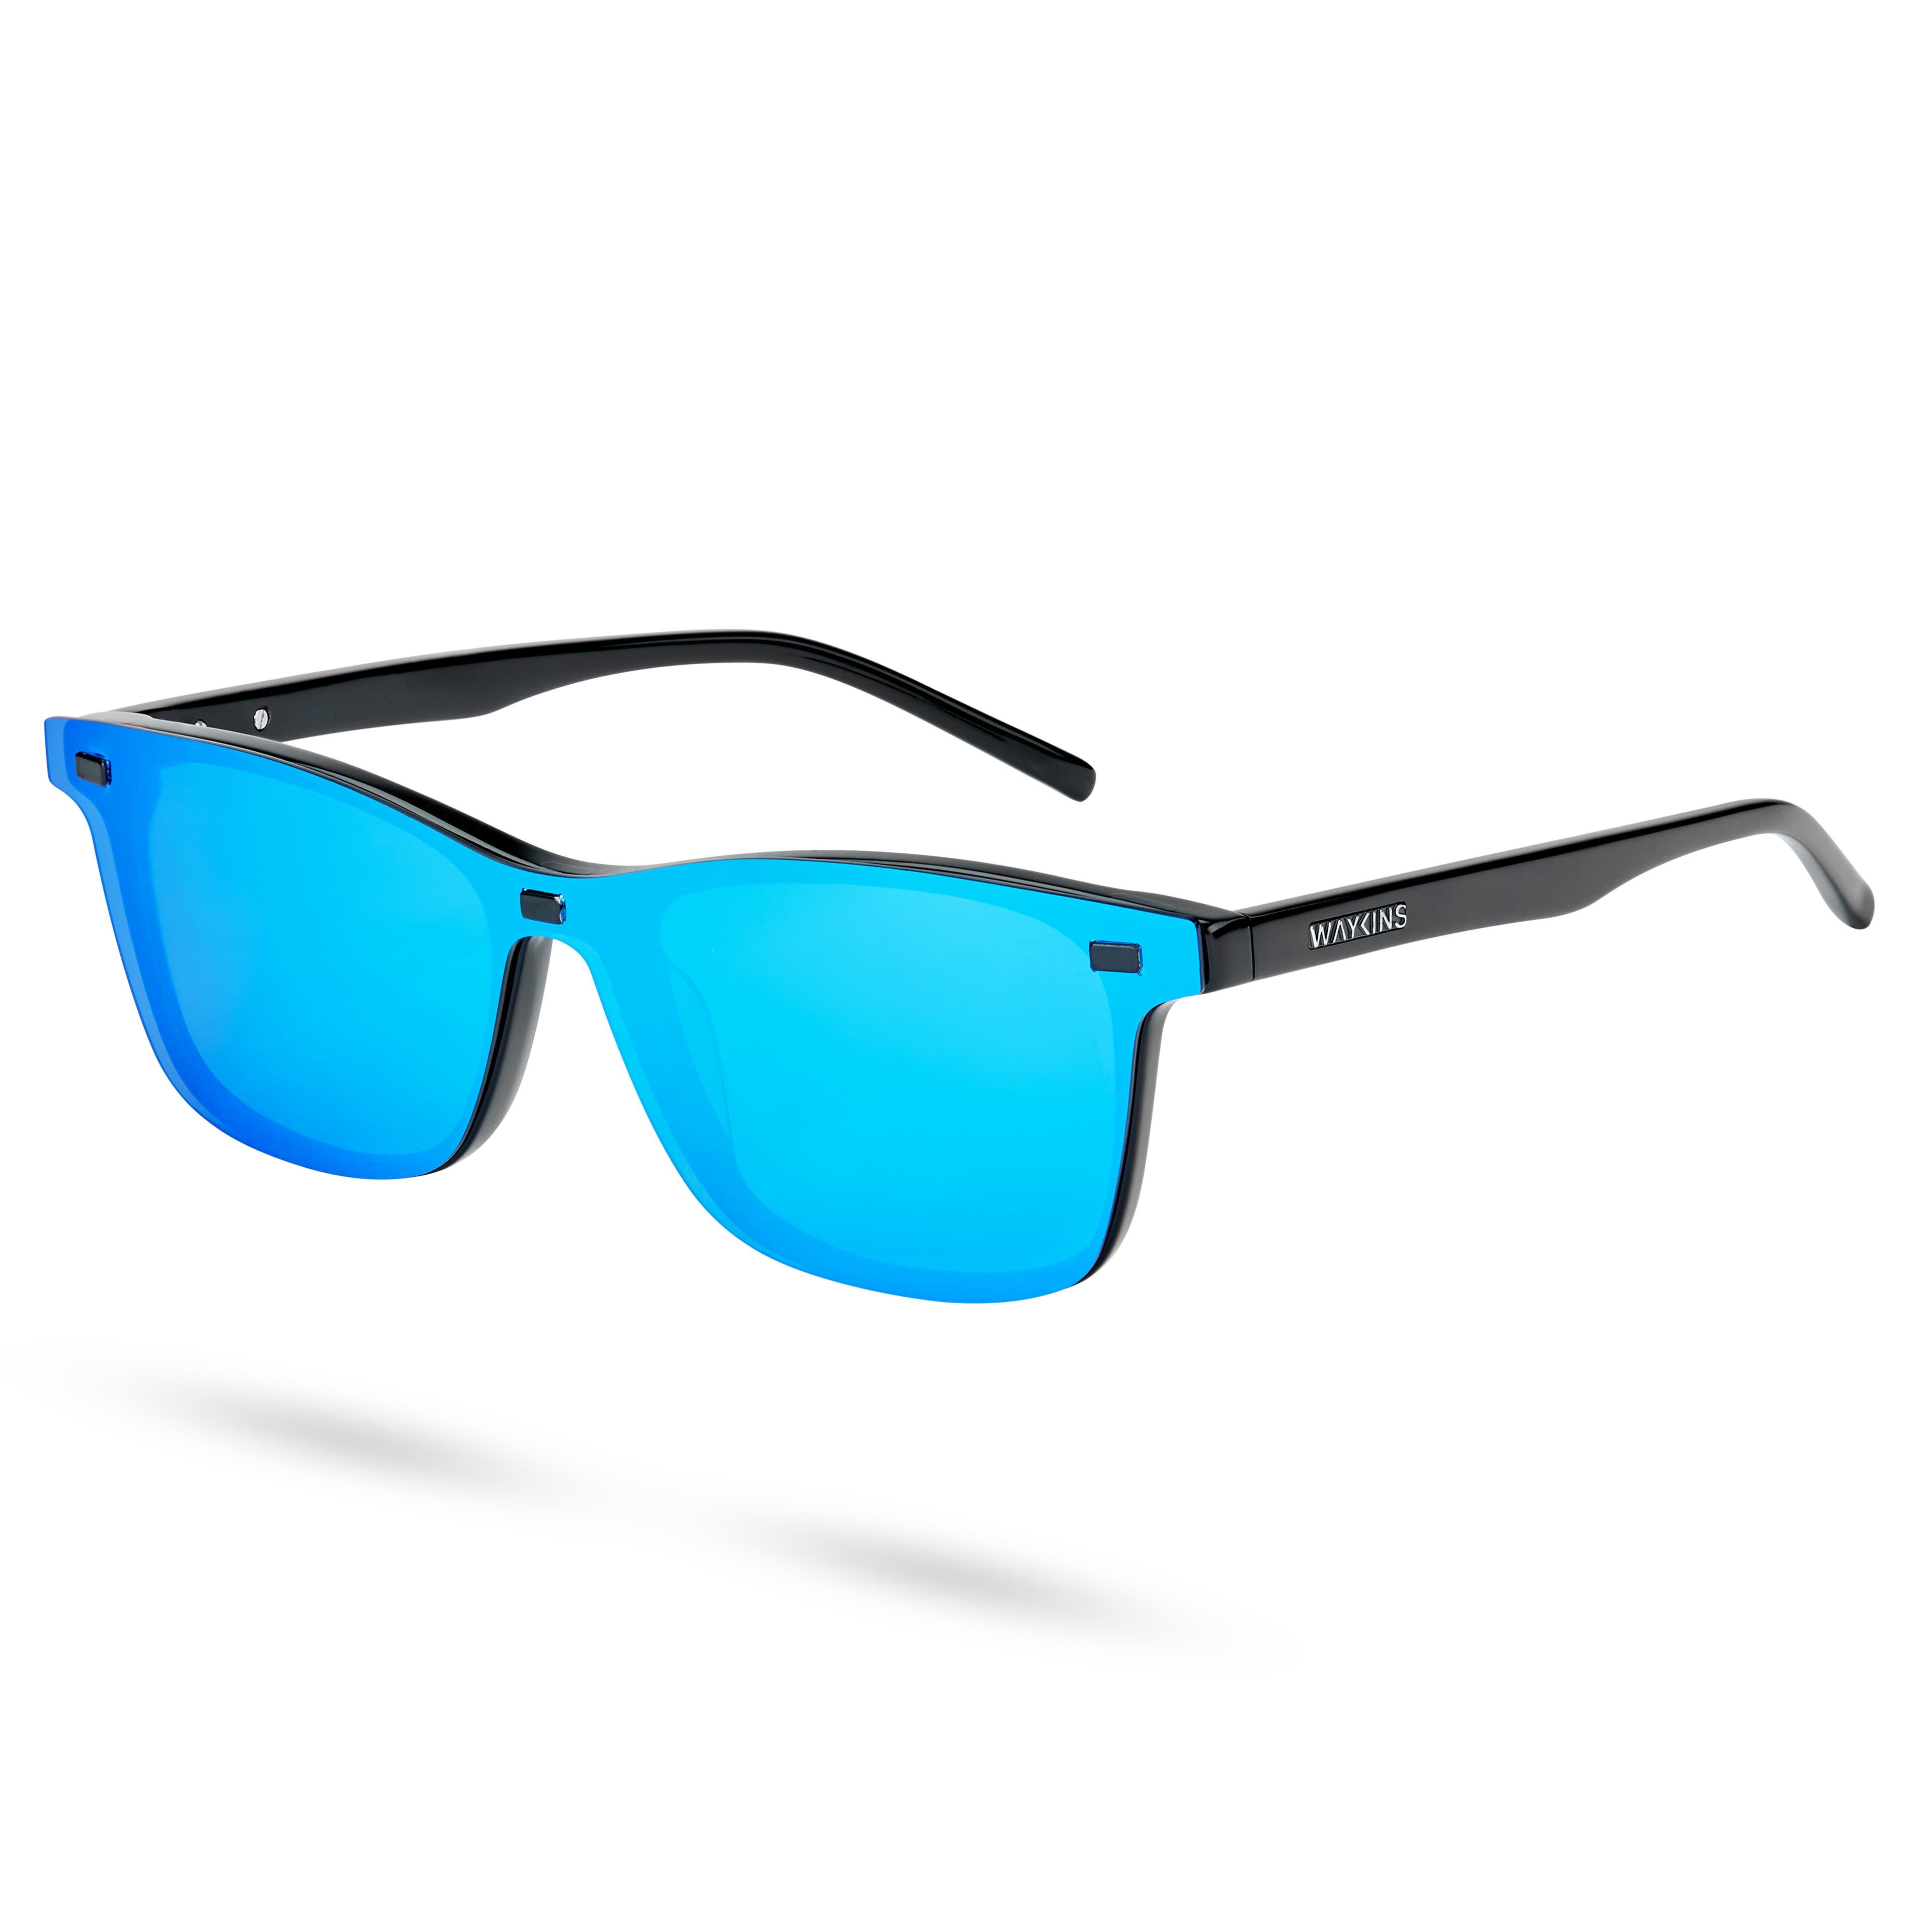 Ombra Magnetic prémium cserélhető lencsés napszemüveg